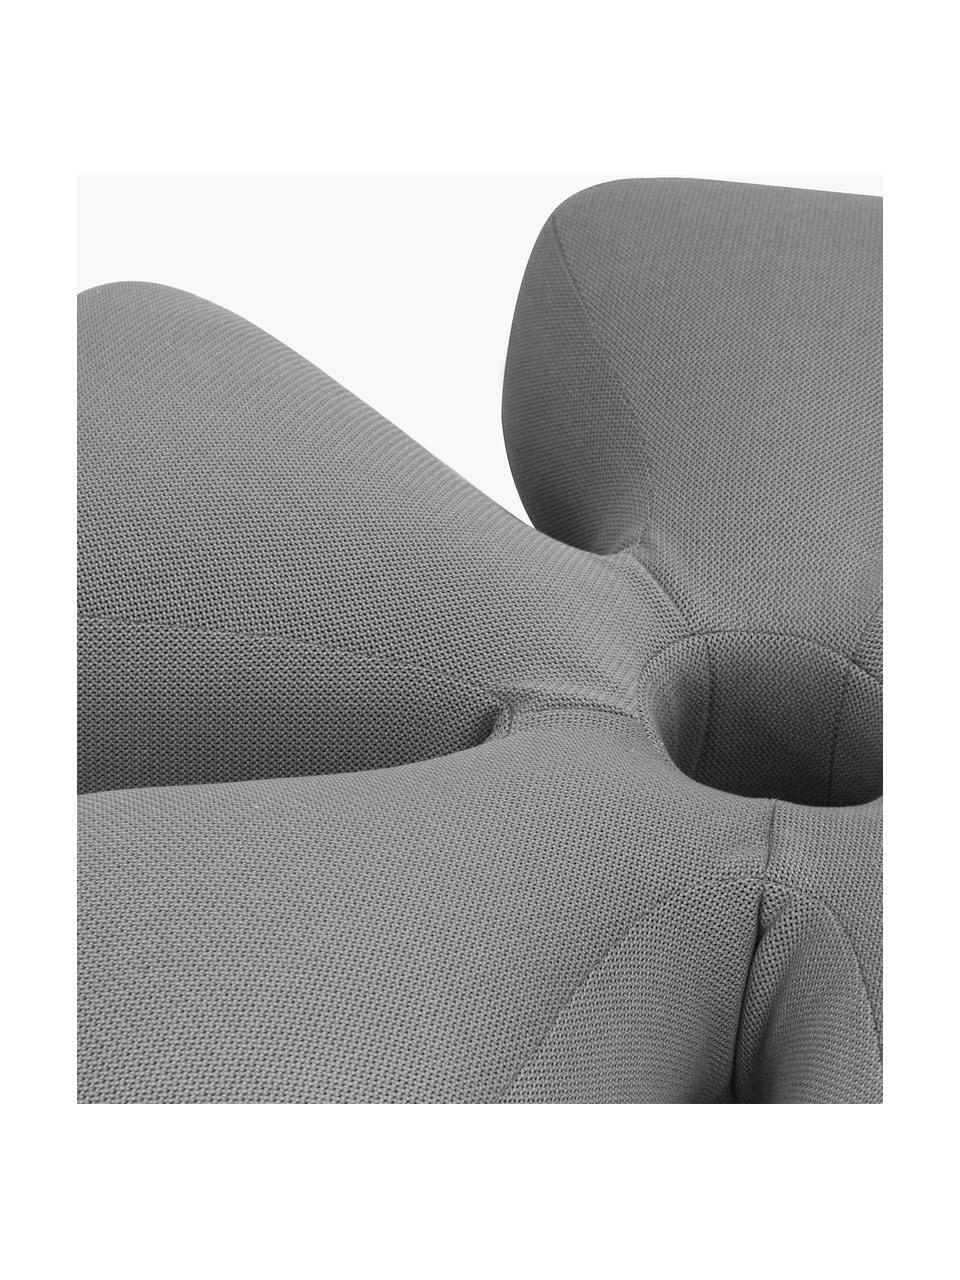 Ręcznie wykonany zewnętrzny worek do siedzenia Flower, Tapicerka: 70% PAN + 30% PES, wodood, Szary, Ø 110 x W 25 cm